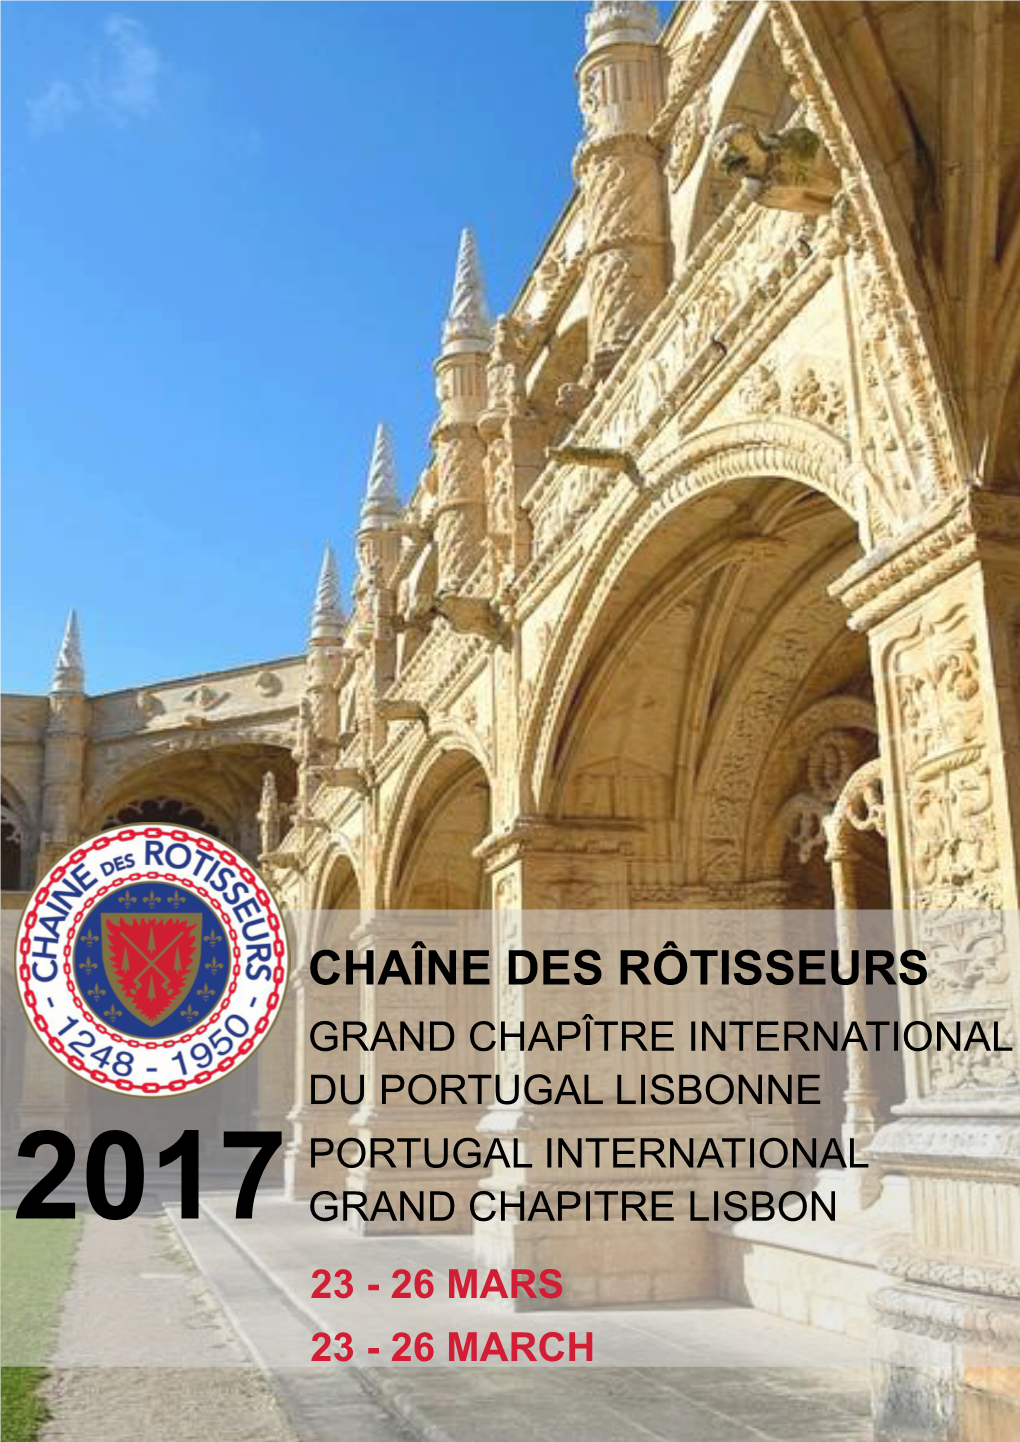 Chaîne Des Rôtisseurs Grand Chapître International Du Portugal Lisbonne Portugal International 2017 Grand Chapitre Lisbon 23 - 26 Mars 23 - 26 March